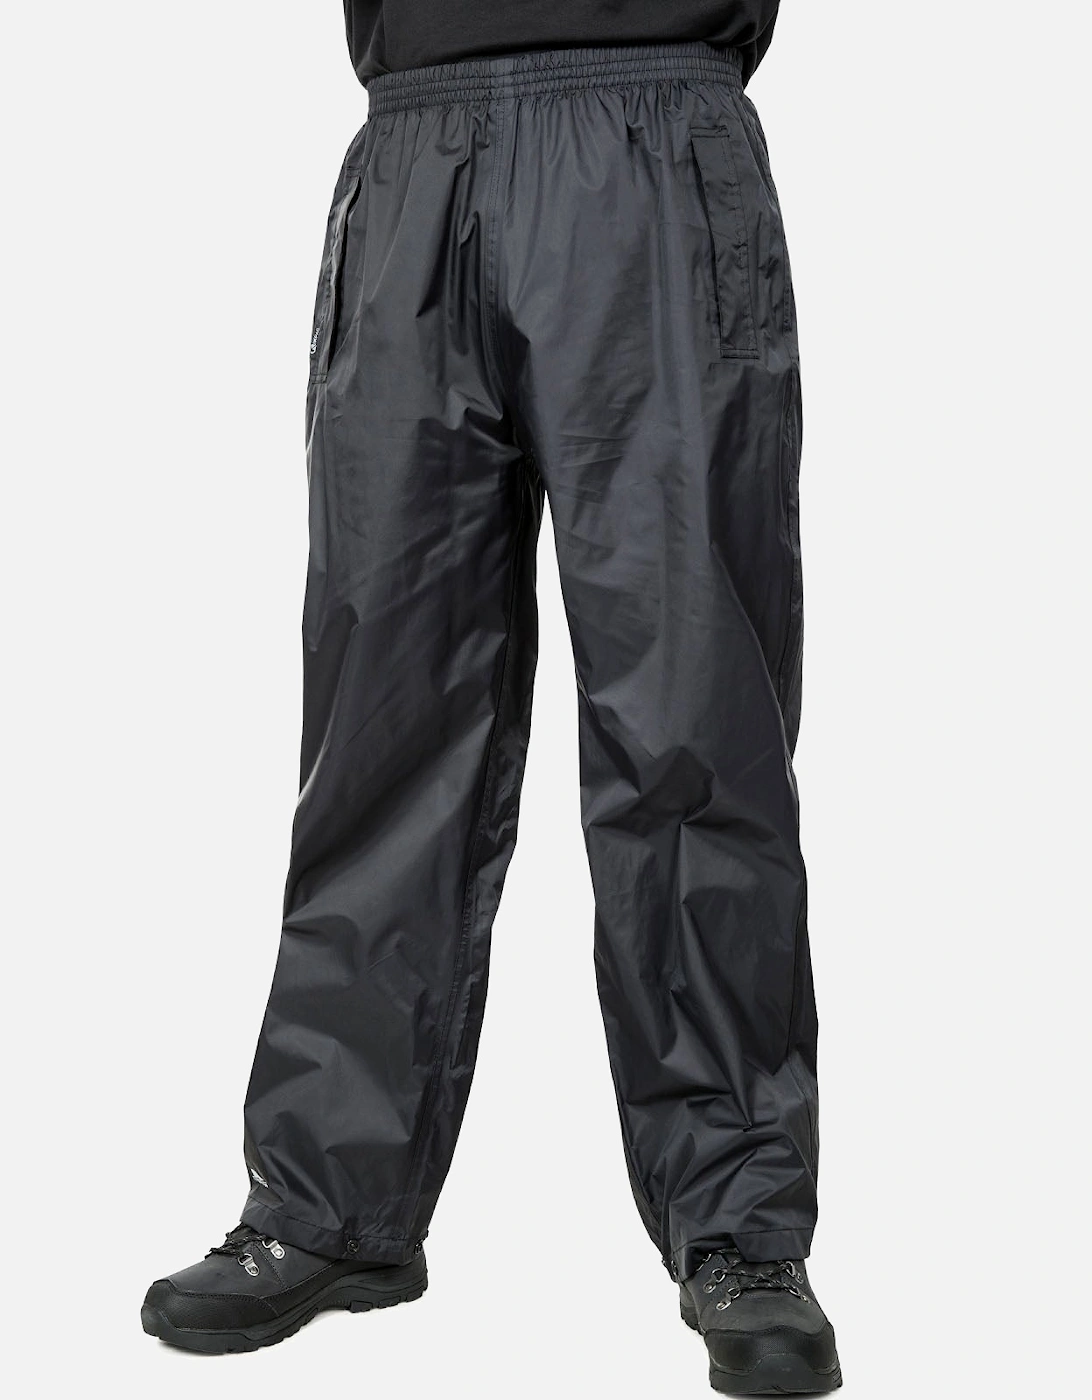 Qikpac Packaway Waterproof Trousers, 17 of 16